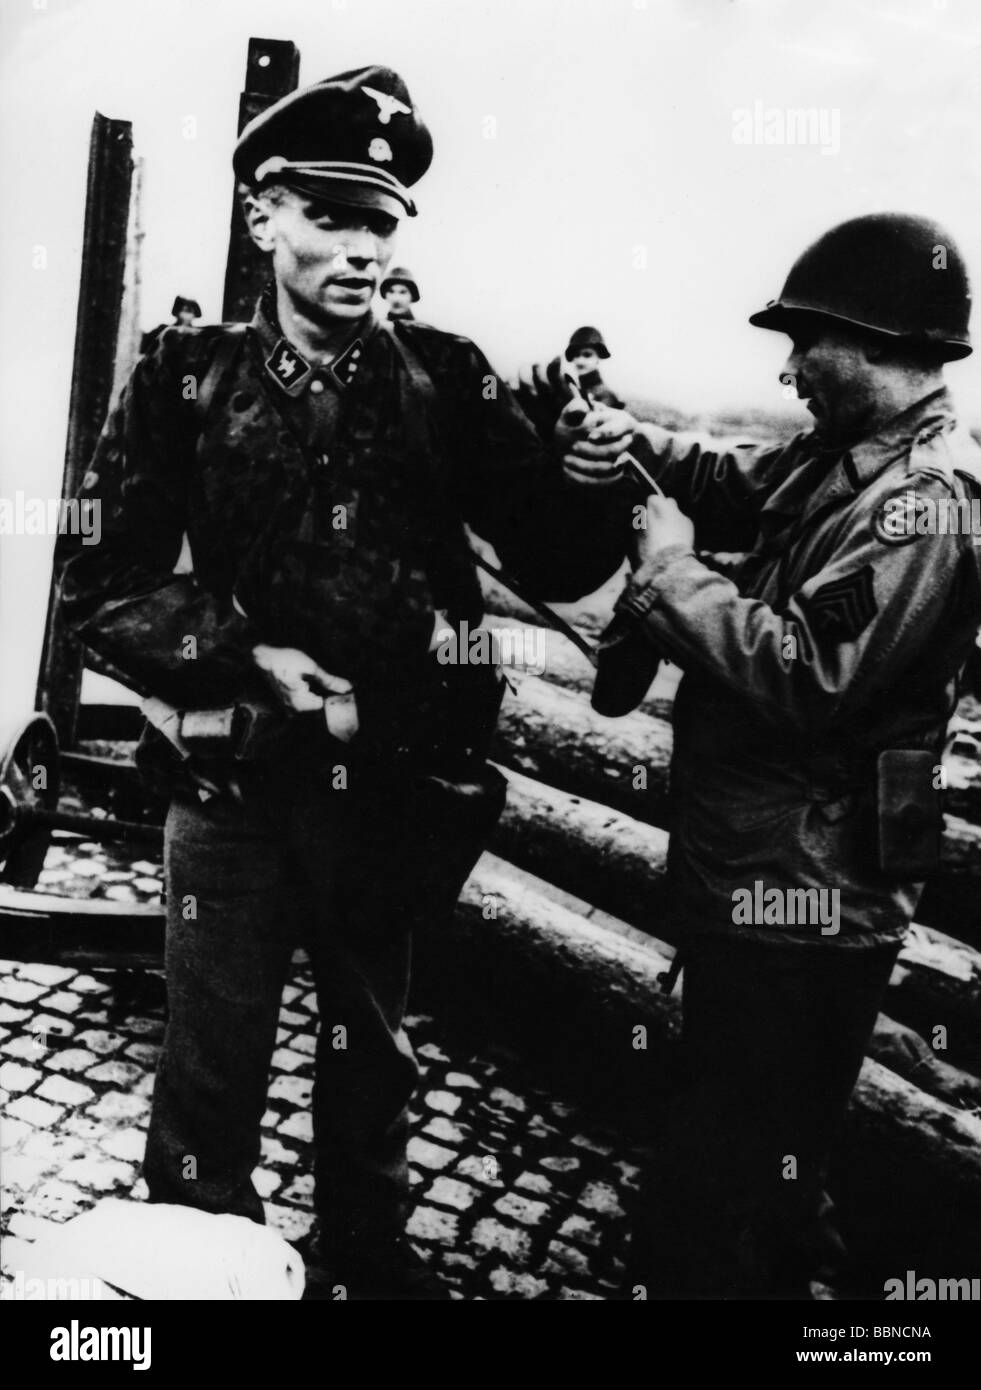 Événements, seconde Guerre mondiale / seconde Guerre mondiale, Allemagne, sergent de la 102ème division américaine frère Waffen SS lieutenant, 1945, Banque D'Images